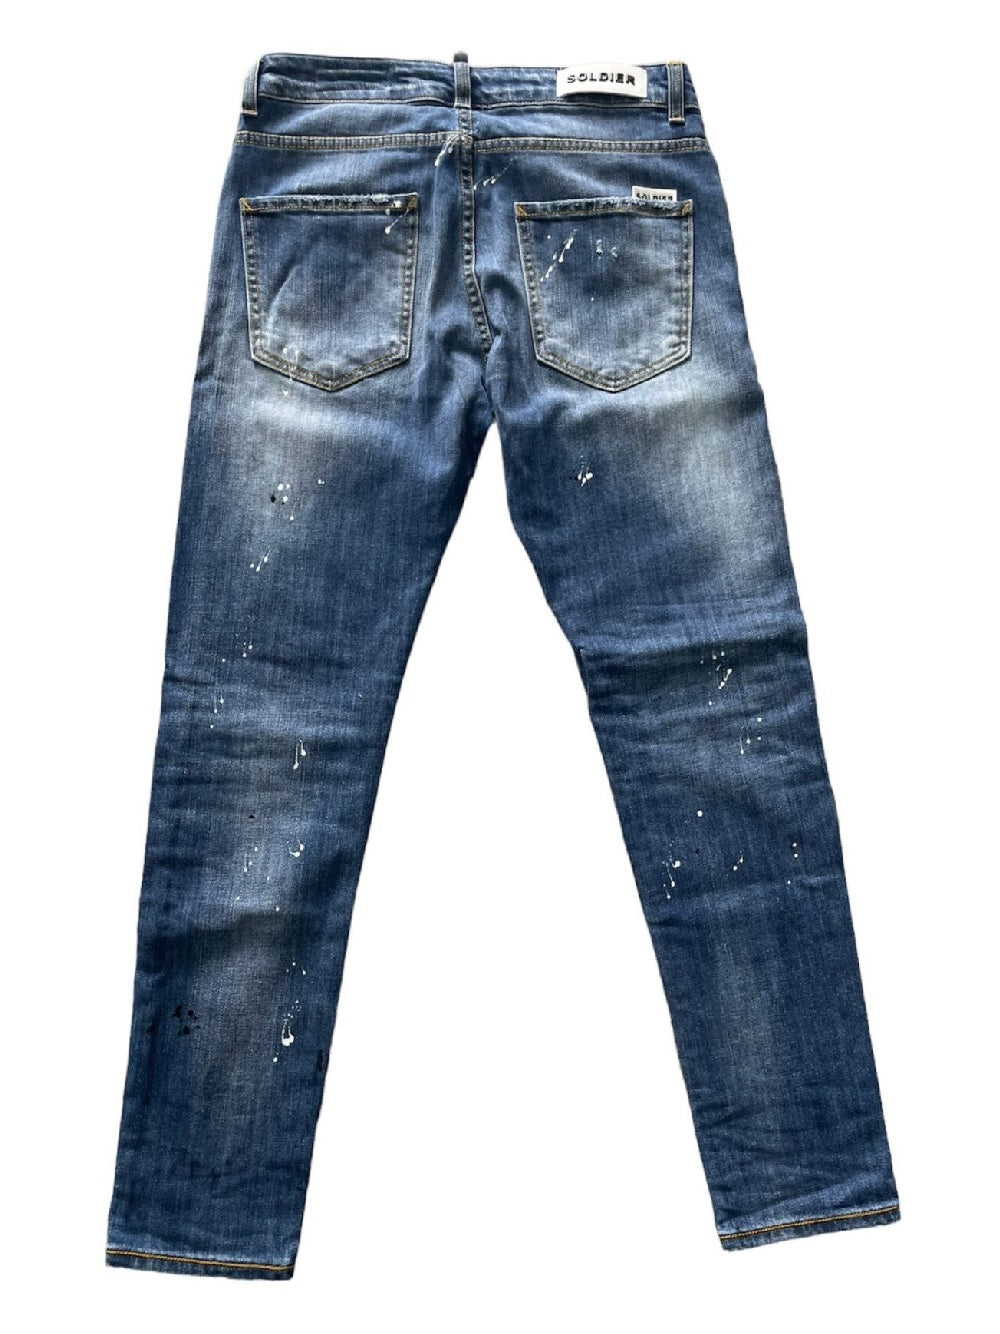 Jeans Soldier modello 141B slavato con schizzi di vernice con strappati sfrangiato